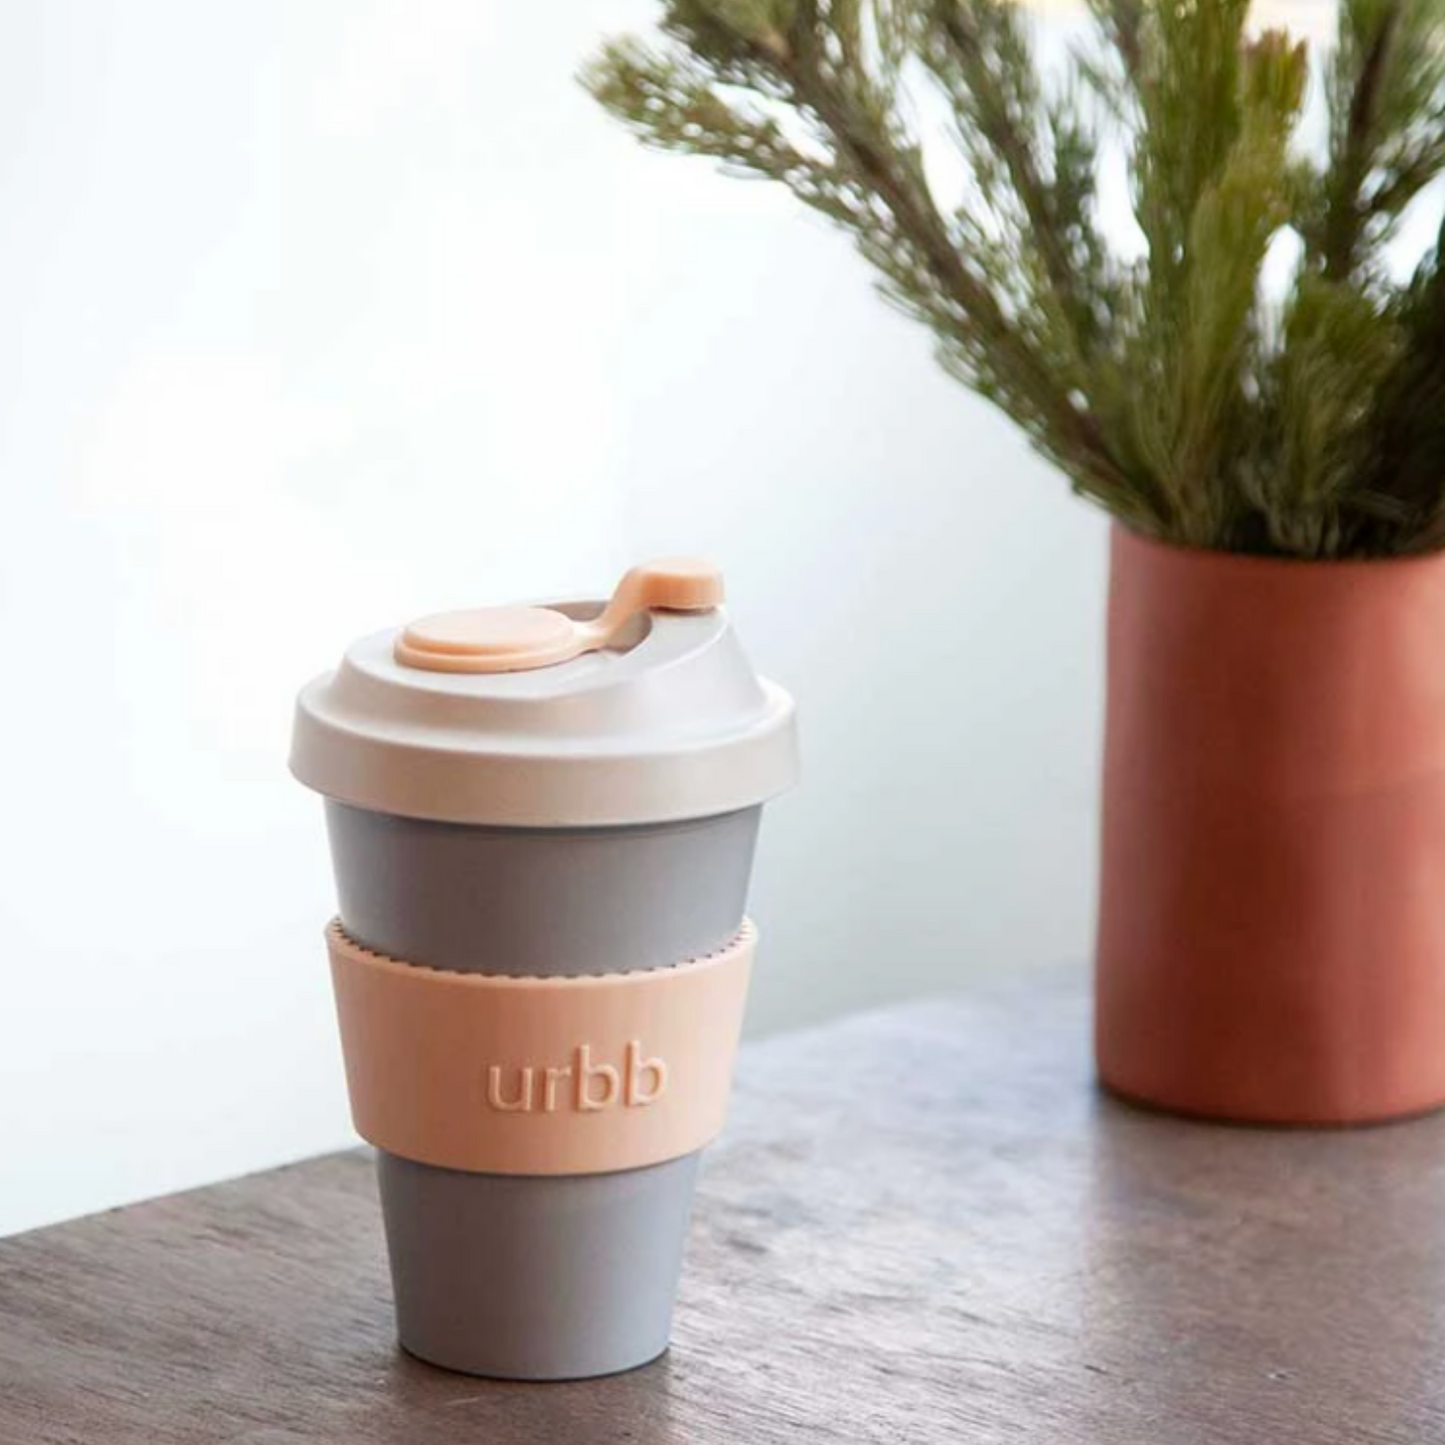 PORTER GREEN - Reusable Coffee Urbb Cup | Stuttgart